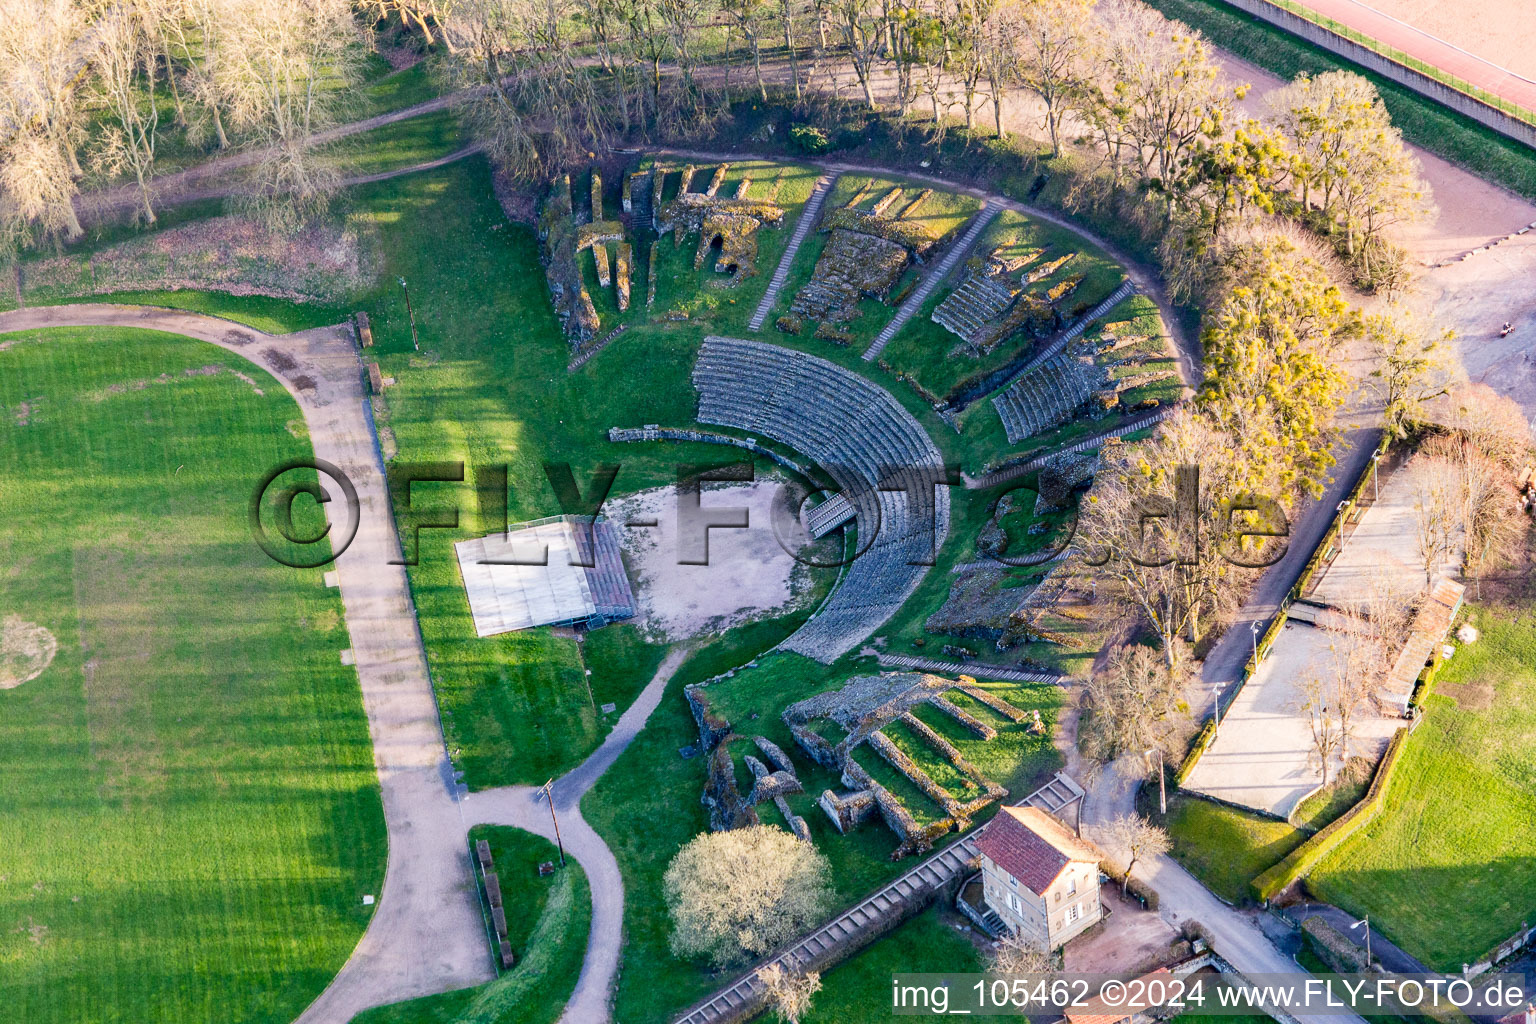 Vue aérienne de Attraction historique de l'ensemble de l'amphithéâtre romain à Autun dans le département Saône et Loire, France